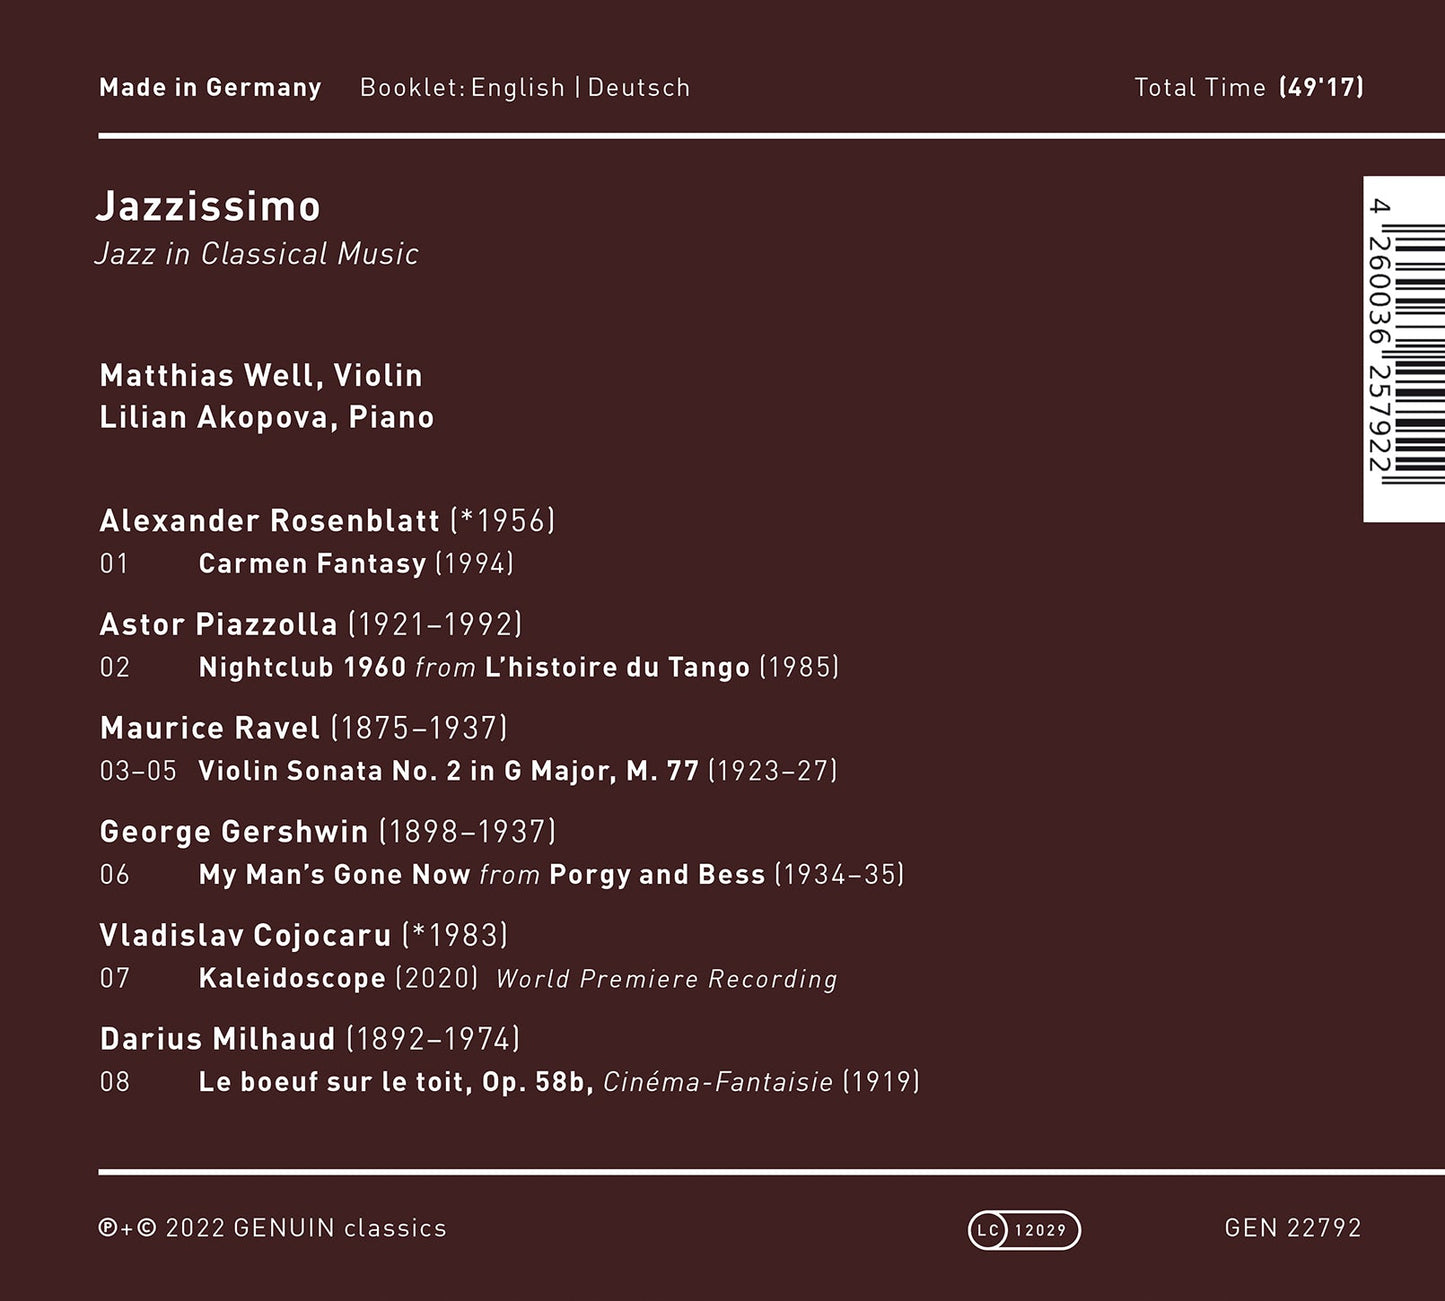 Cojocaru, Gershwin, Milhaud, Piazzolla, Ravel & Rosenblatt: